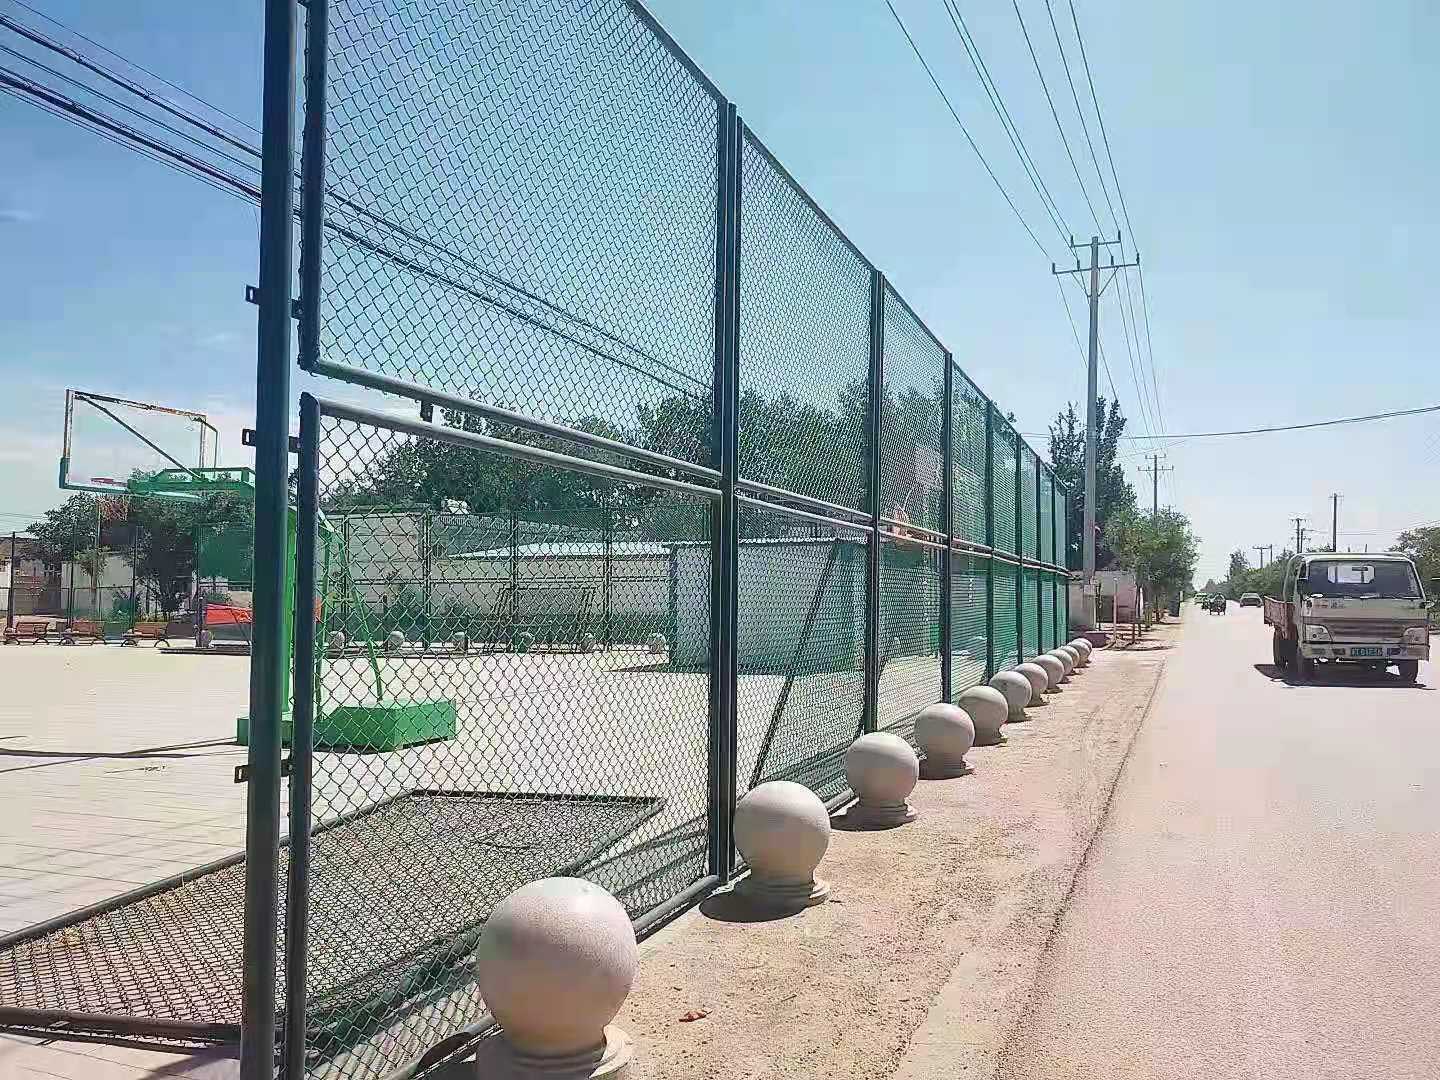 延安市球场围网 网球场护栏网 篮球场围栏订制加工